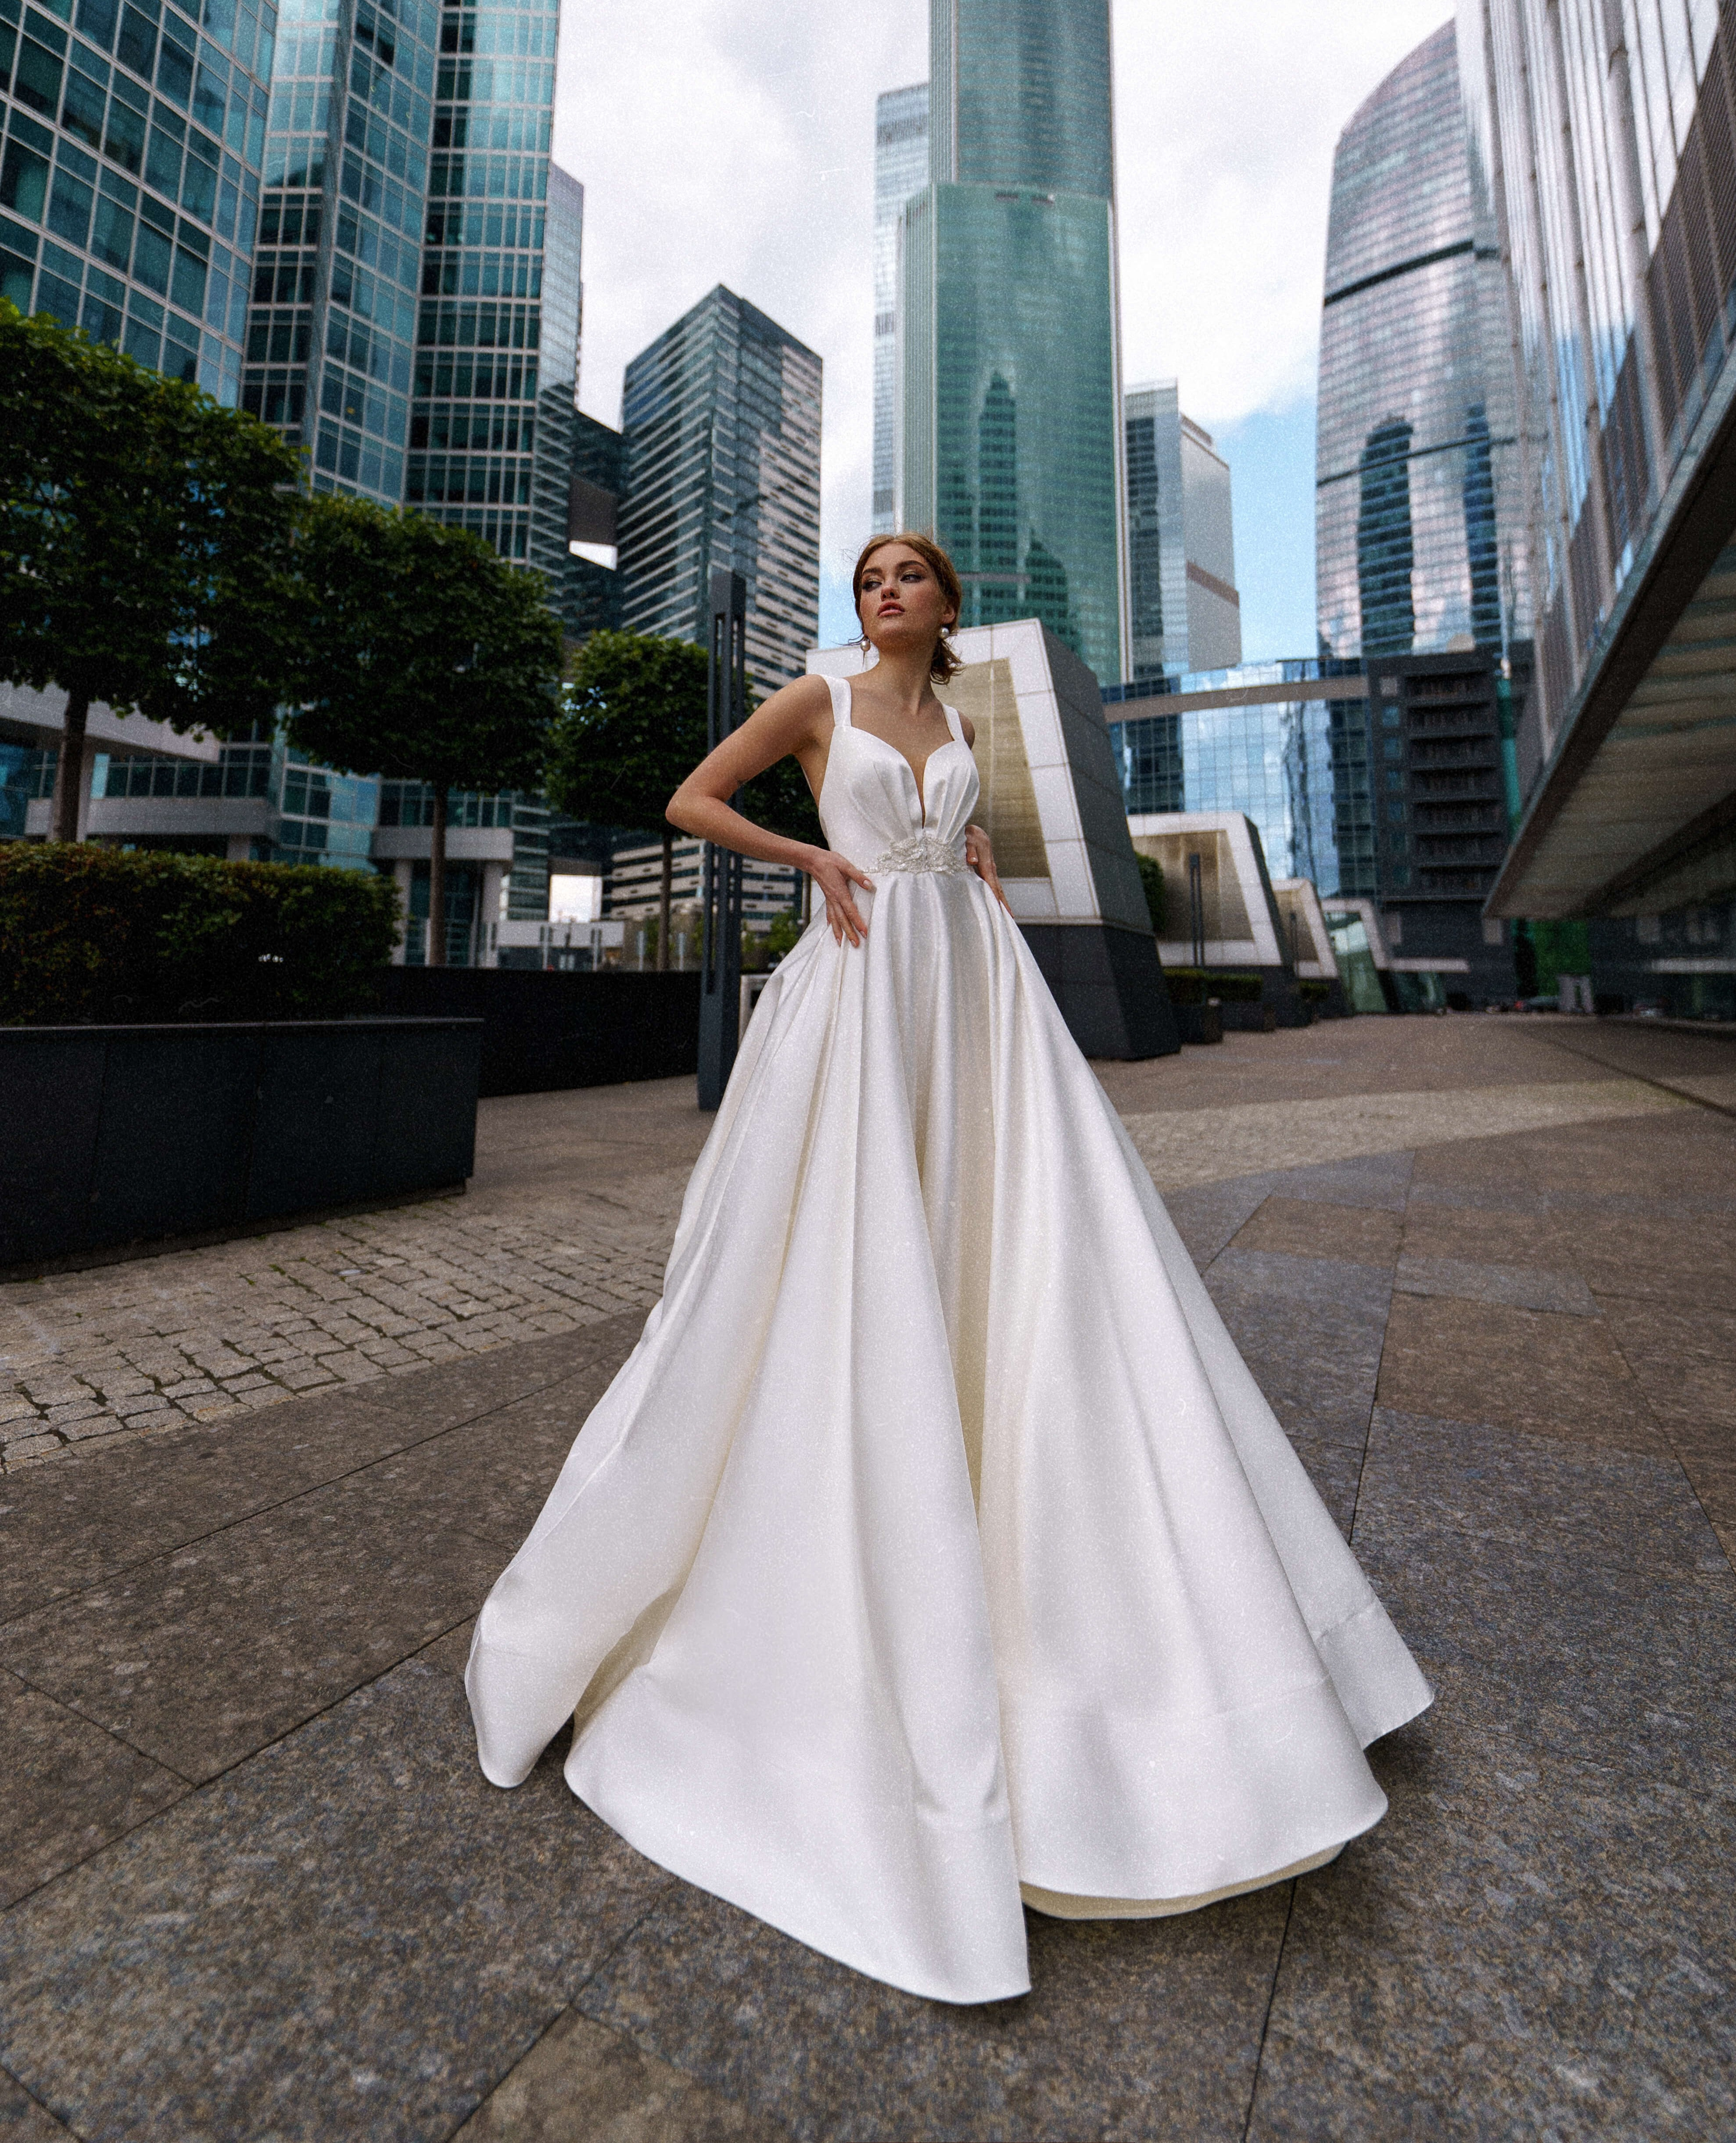 Купить свадебное платье «Барика» Рара Авис из коллекции О Май Брайд 2021 года в интернет-магазине